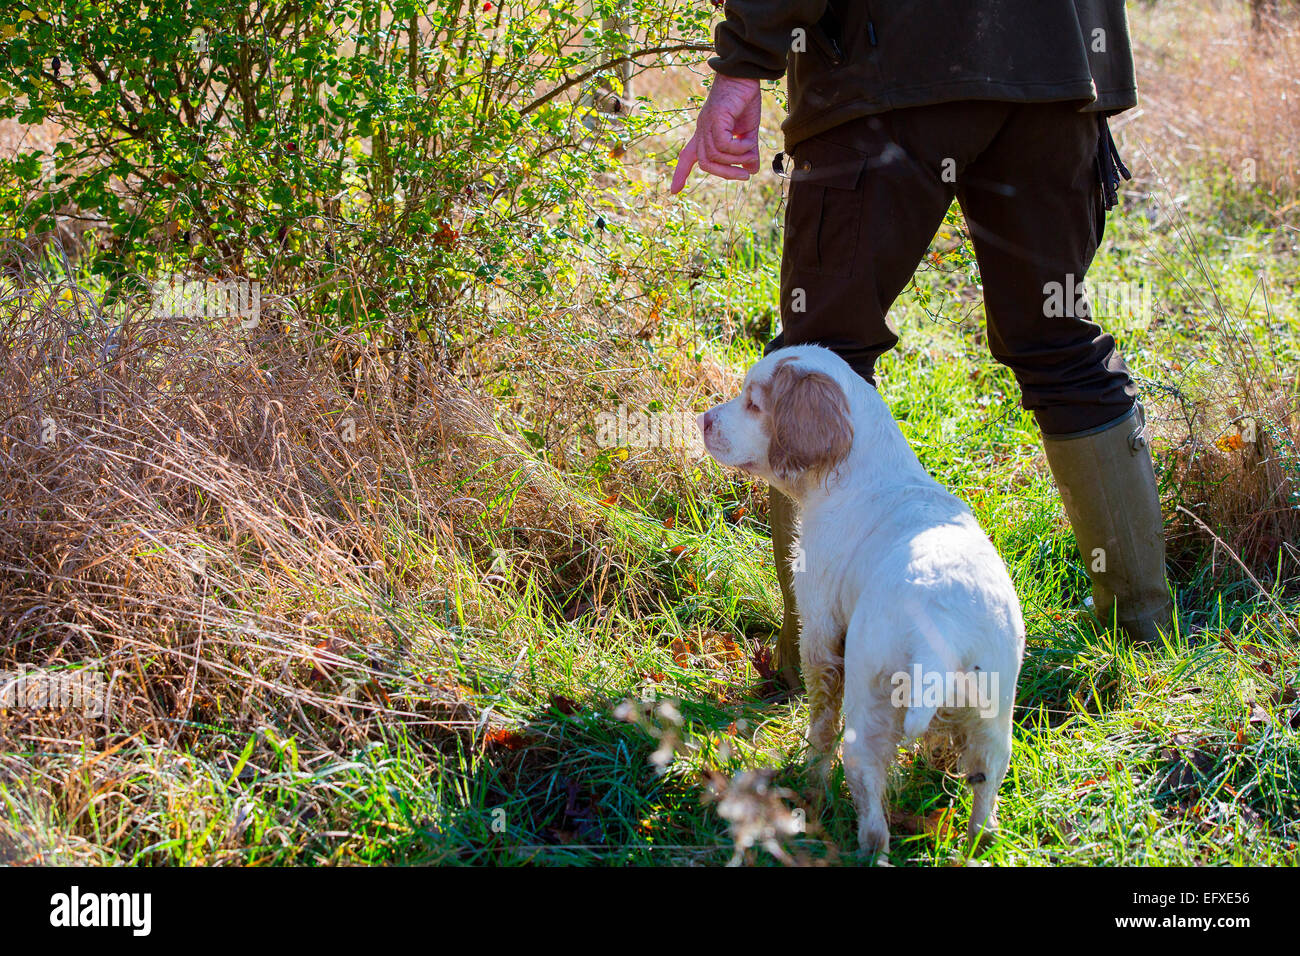 Mann mit Schrotflinte, Spiel im Wald die Signalisierung an clumber spaniel Gun Dog, Oxfordshire, England Stockfoto